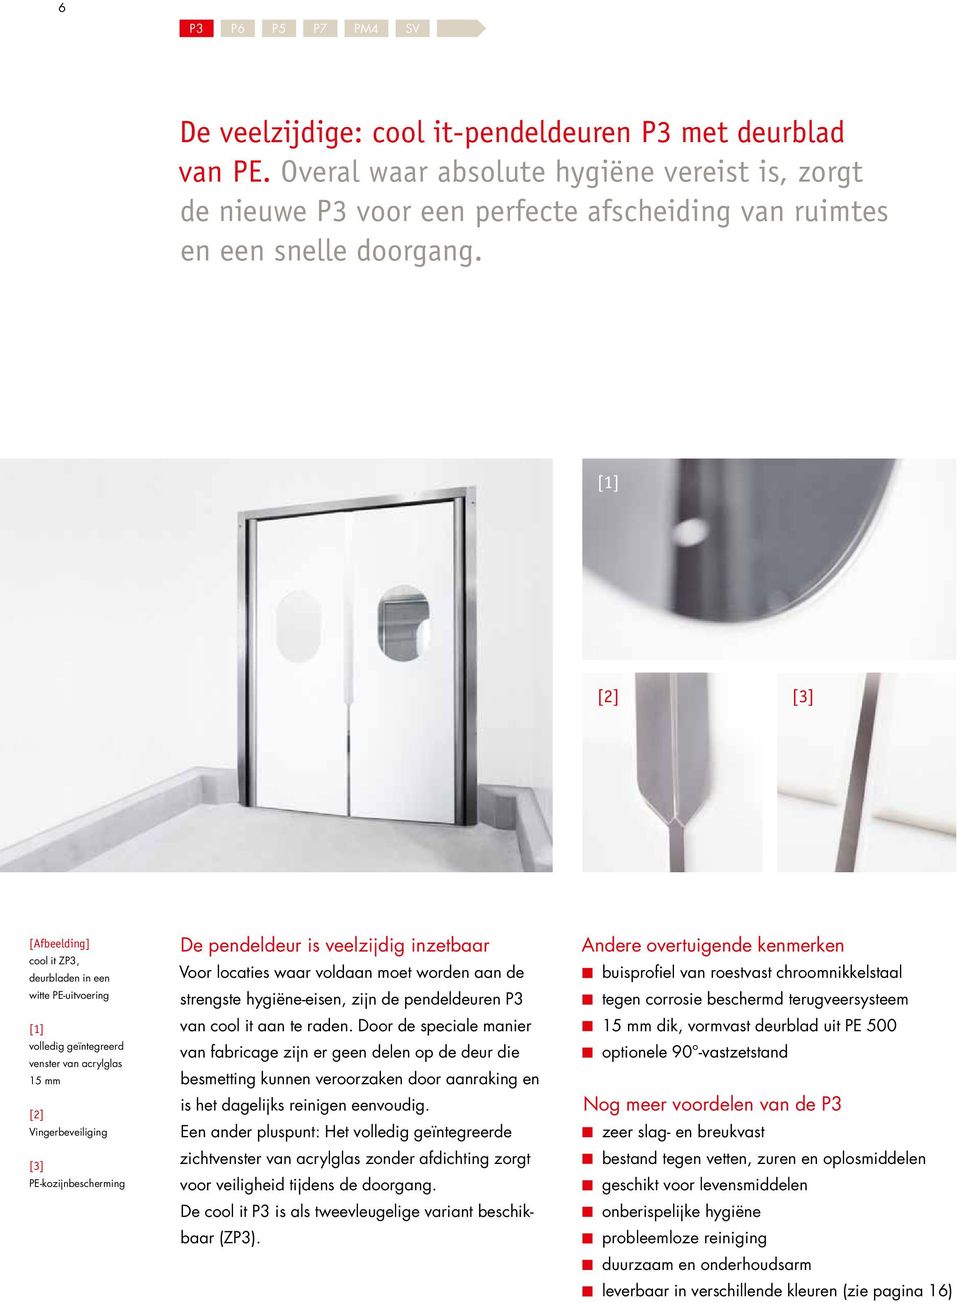 [1] [2] [3] [Afbeelding] cool it ZP3, deurbladen in een witte PE-uitvoering [1] volledig geïntegreerd venster van acrylglas 15 mm [2] Vingerbeveiliging [3] PE-kozijnbescherming De pendeldeur is